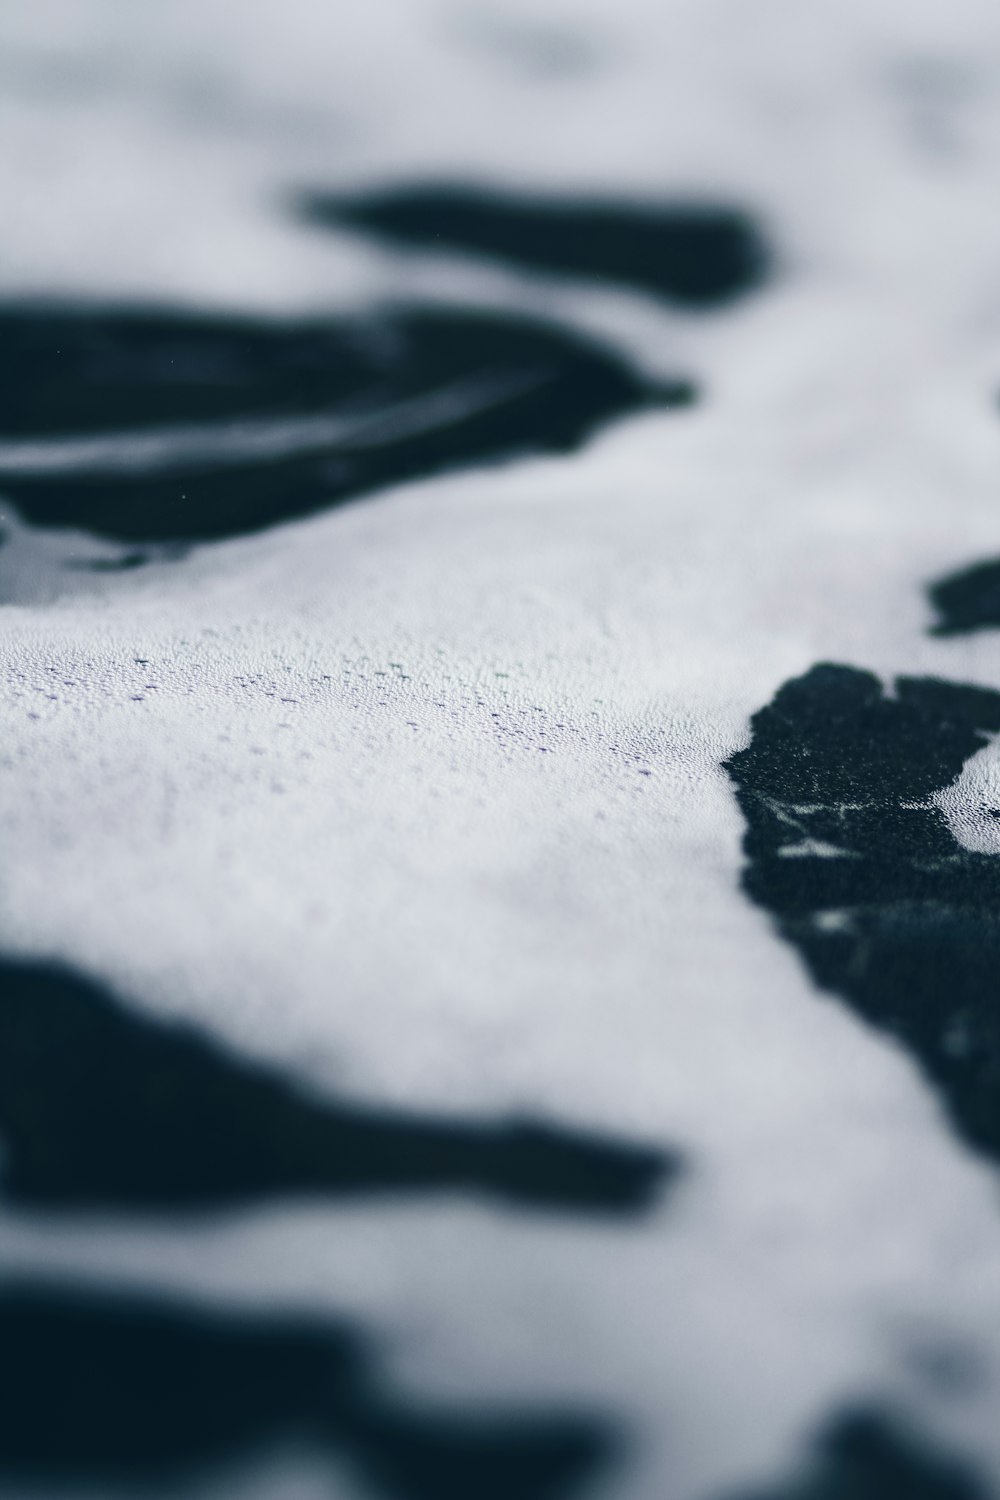 un primo piano di una superficie coperta di neve